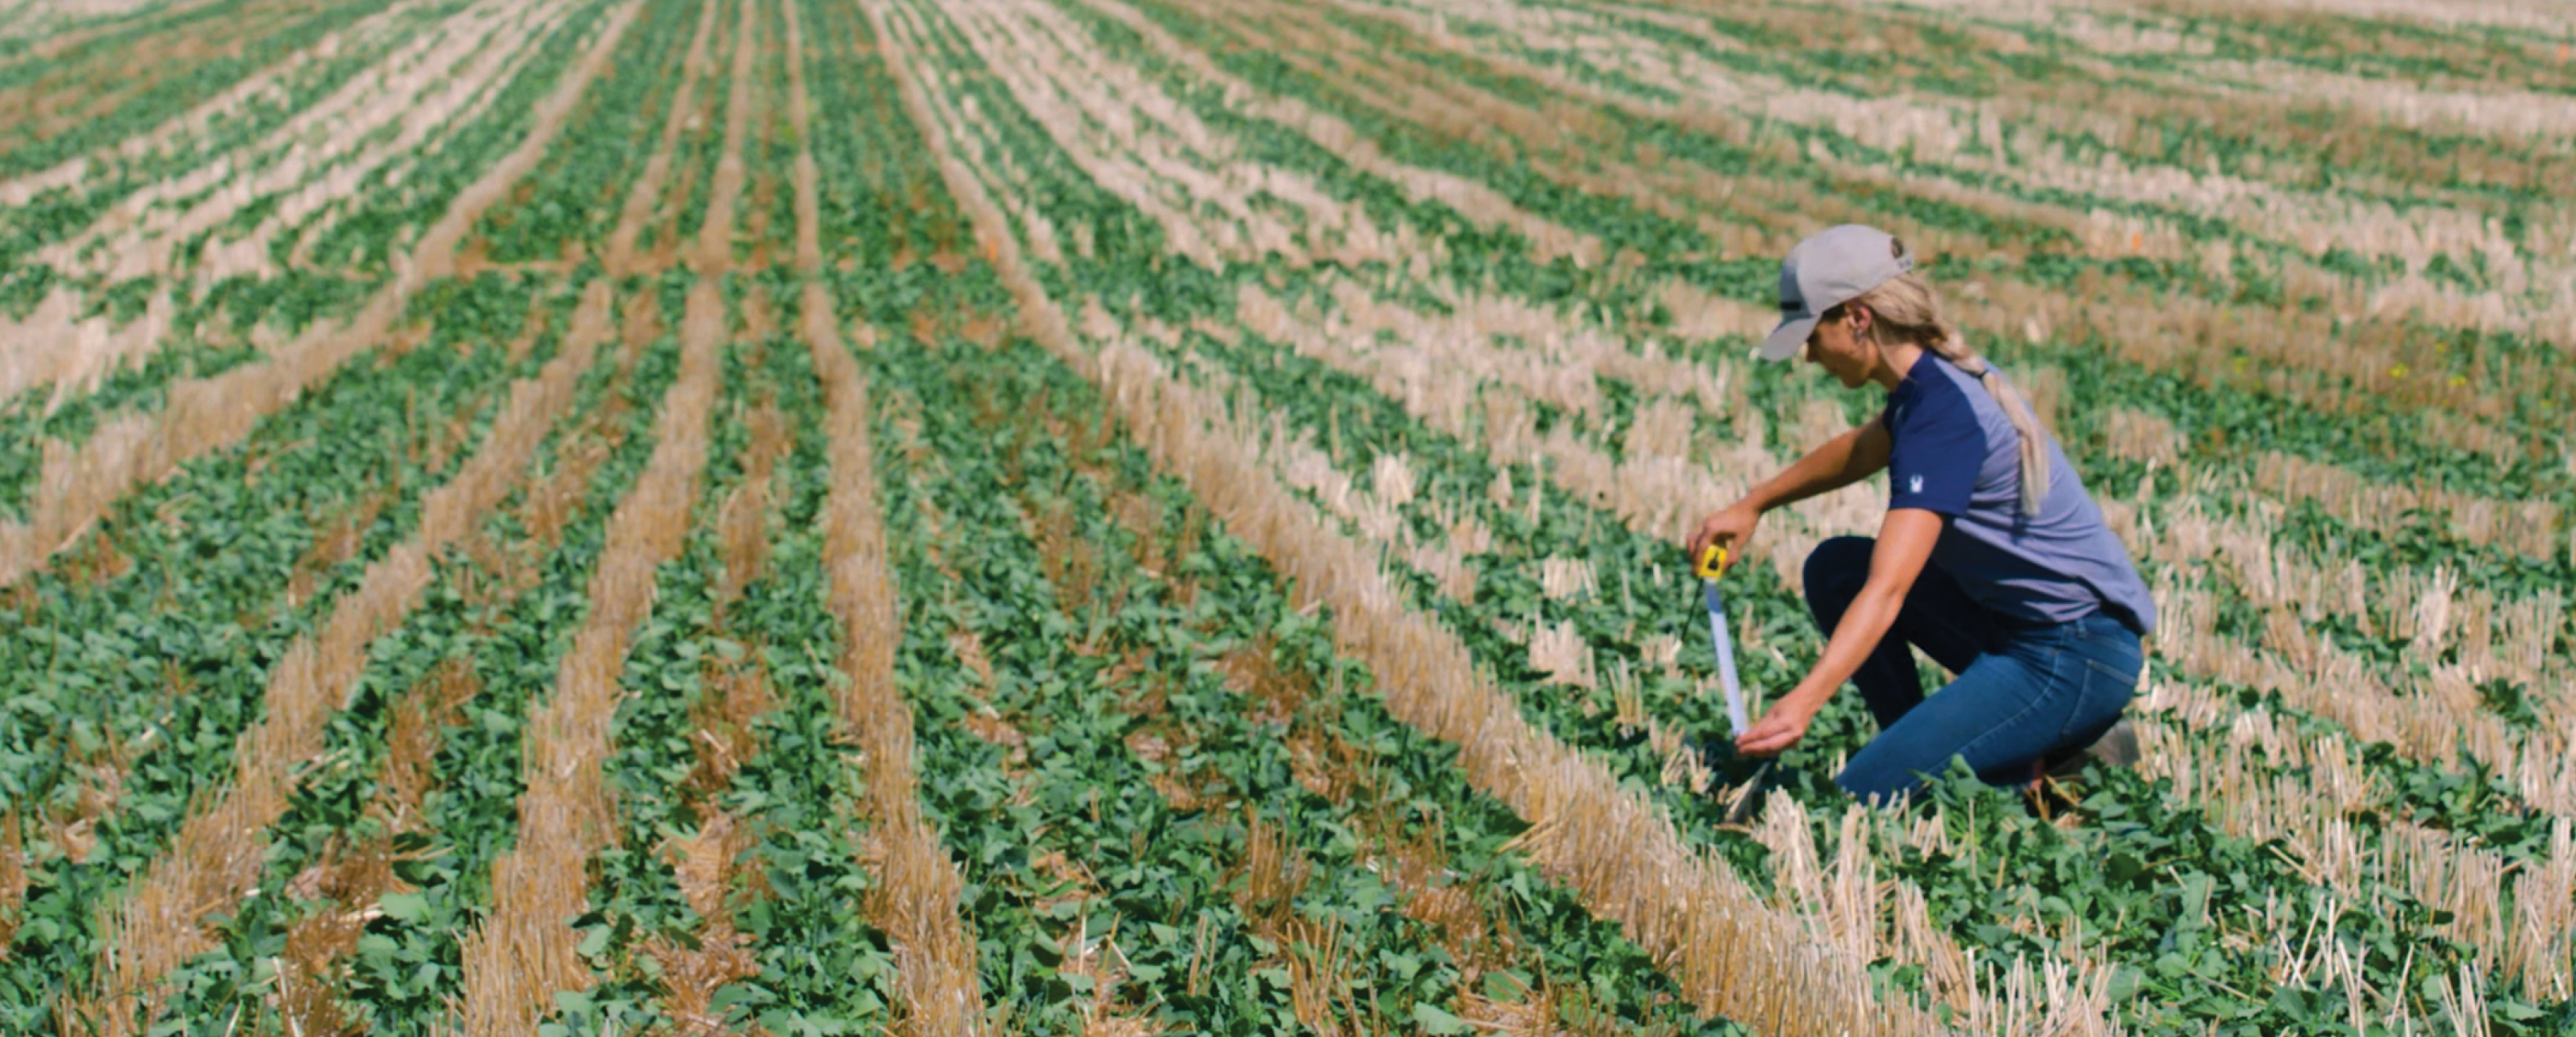 Woman measuring crop in field